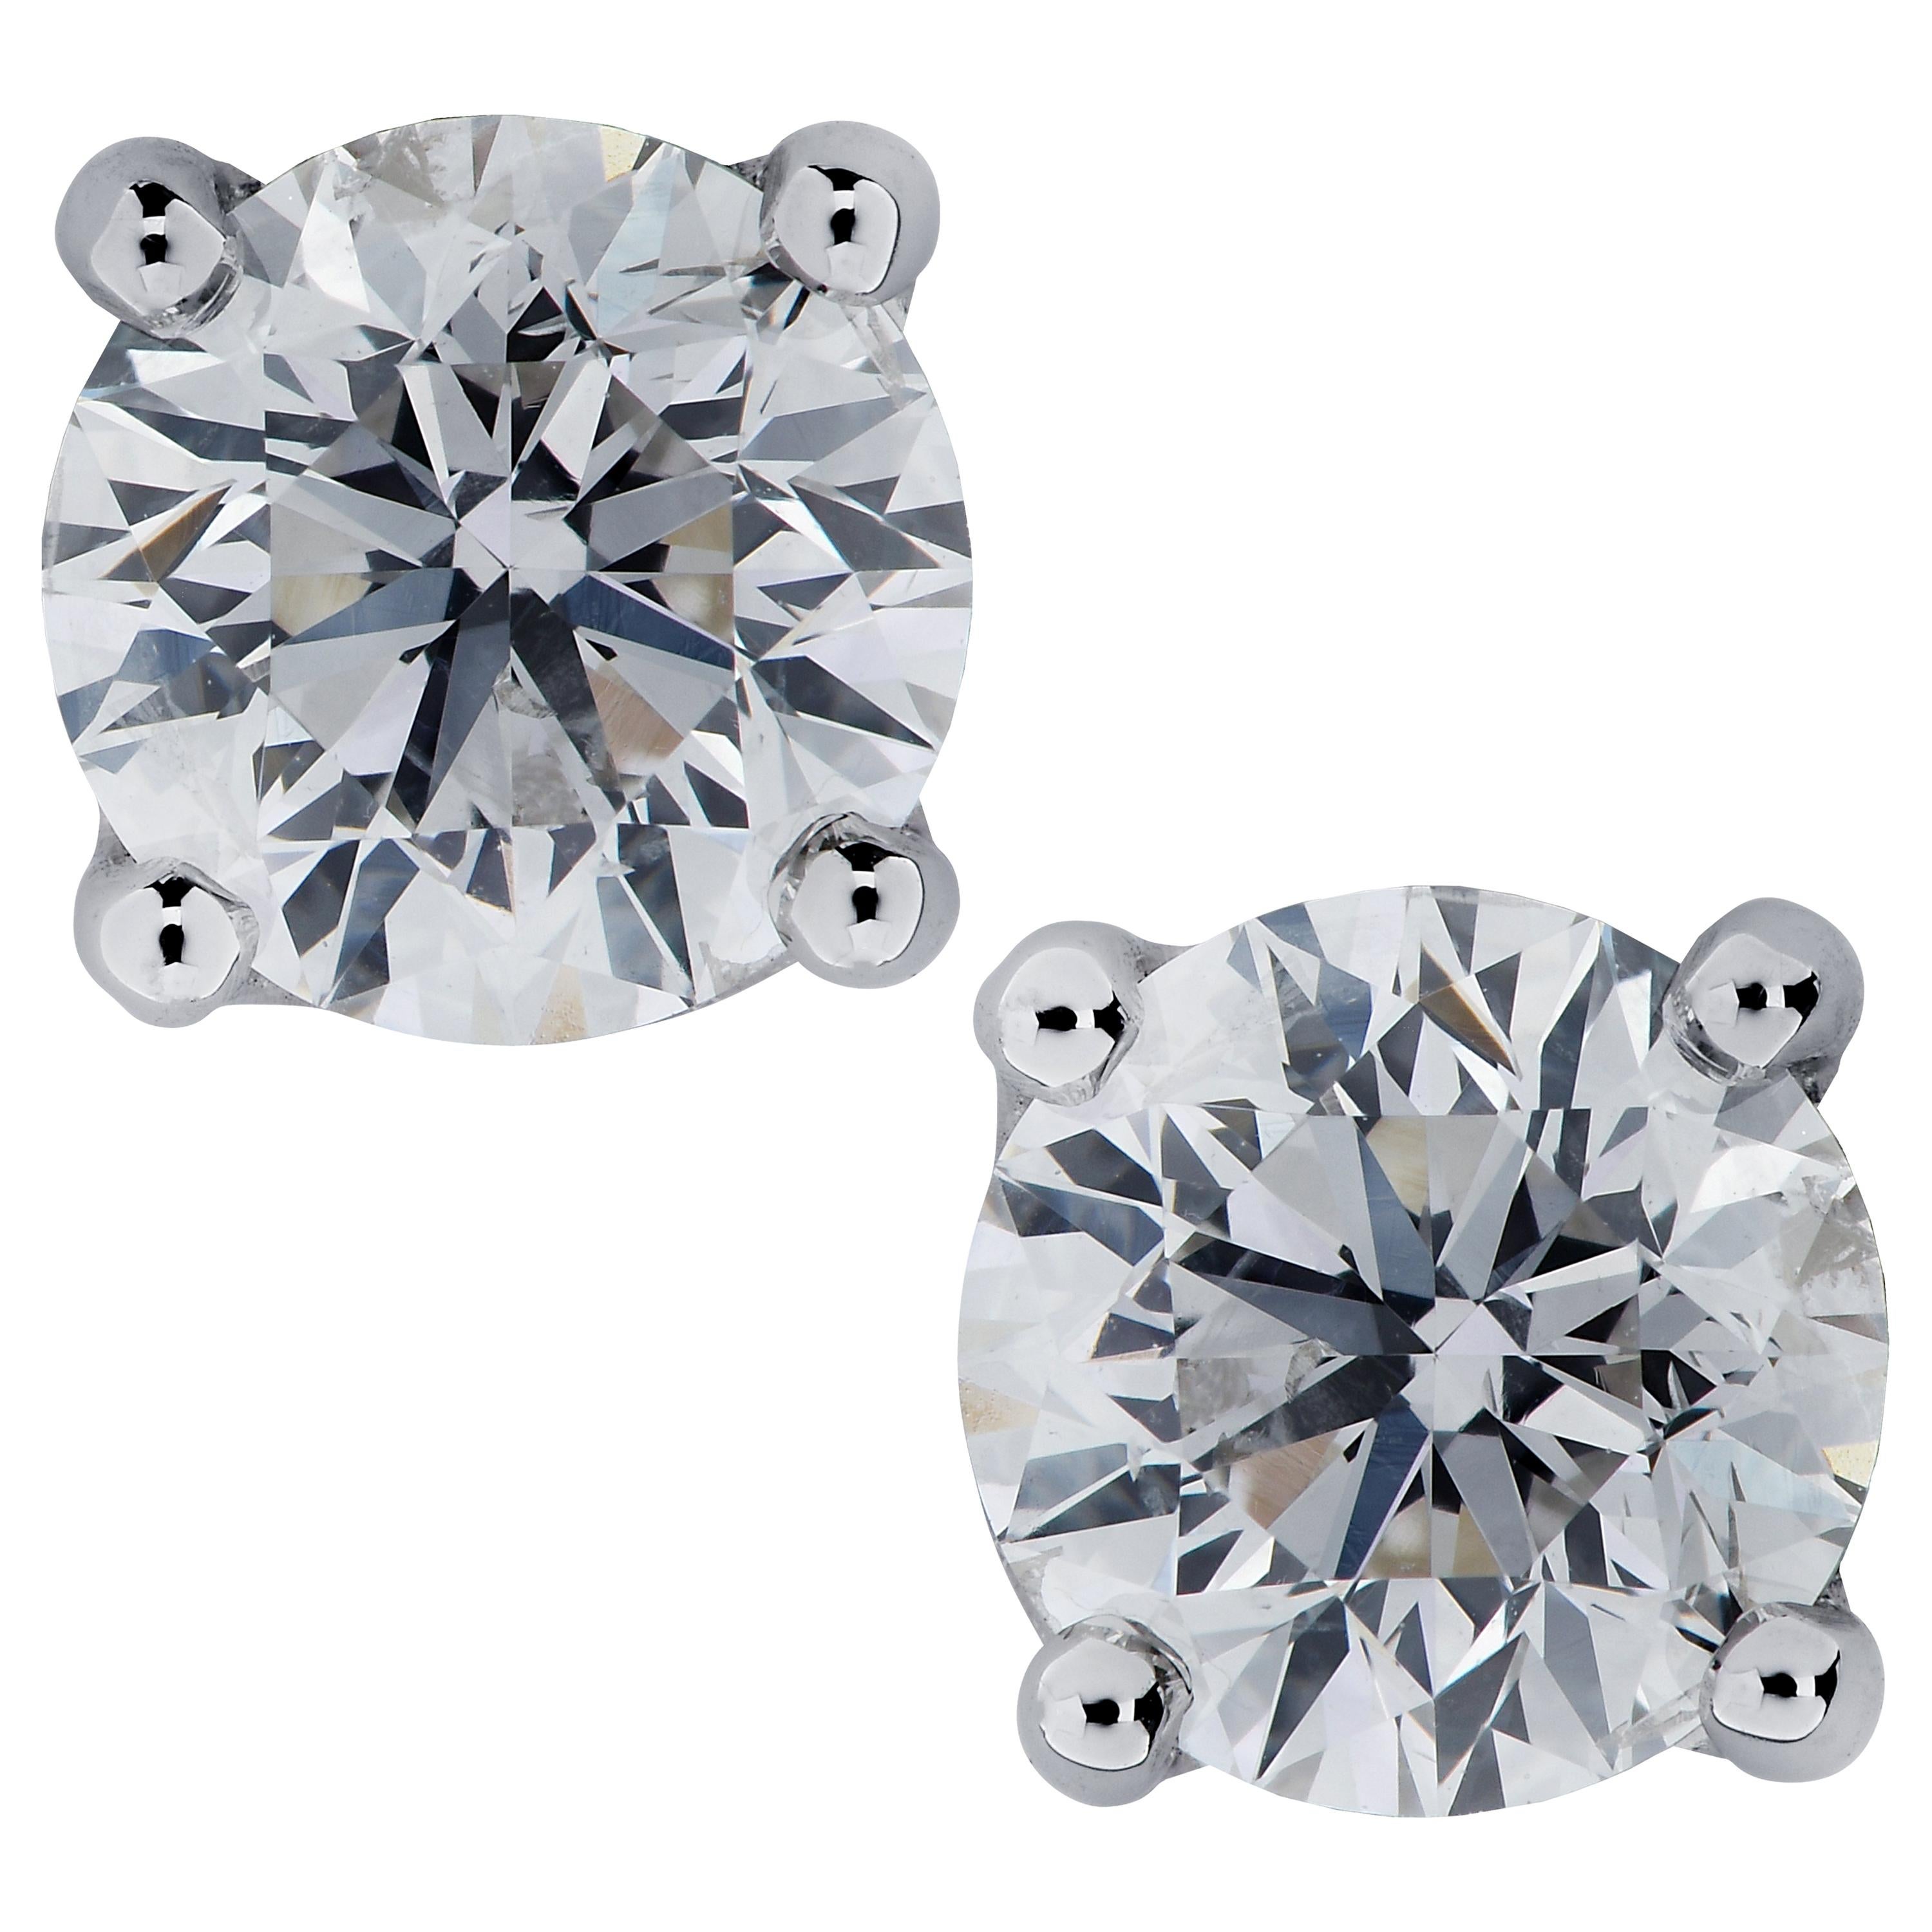 Vivid Diamonds 1.46 Carat Diamond Stud Earrings